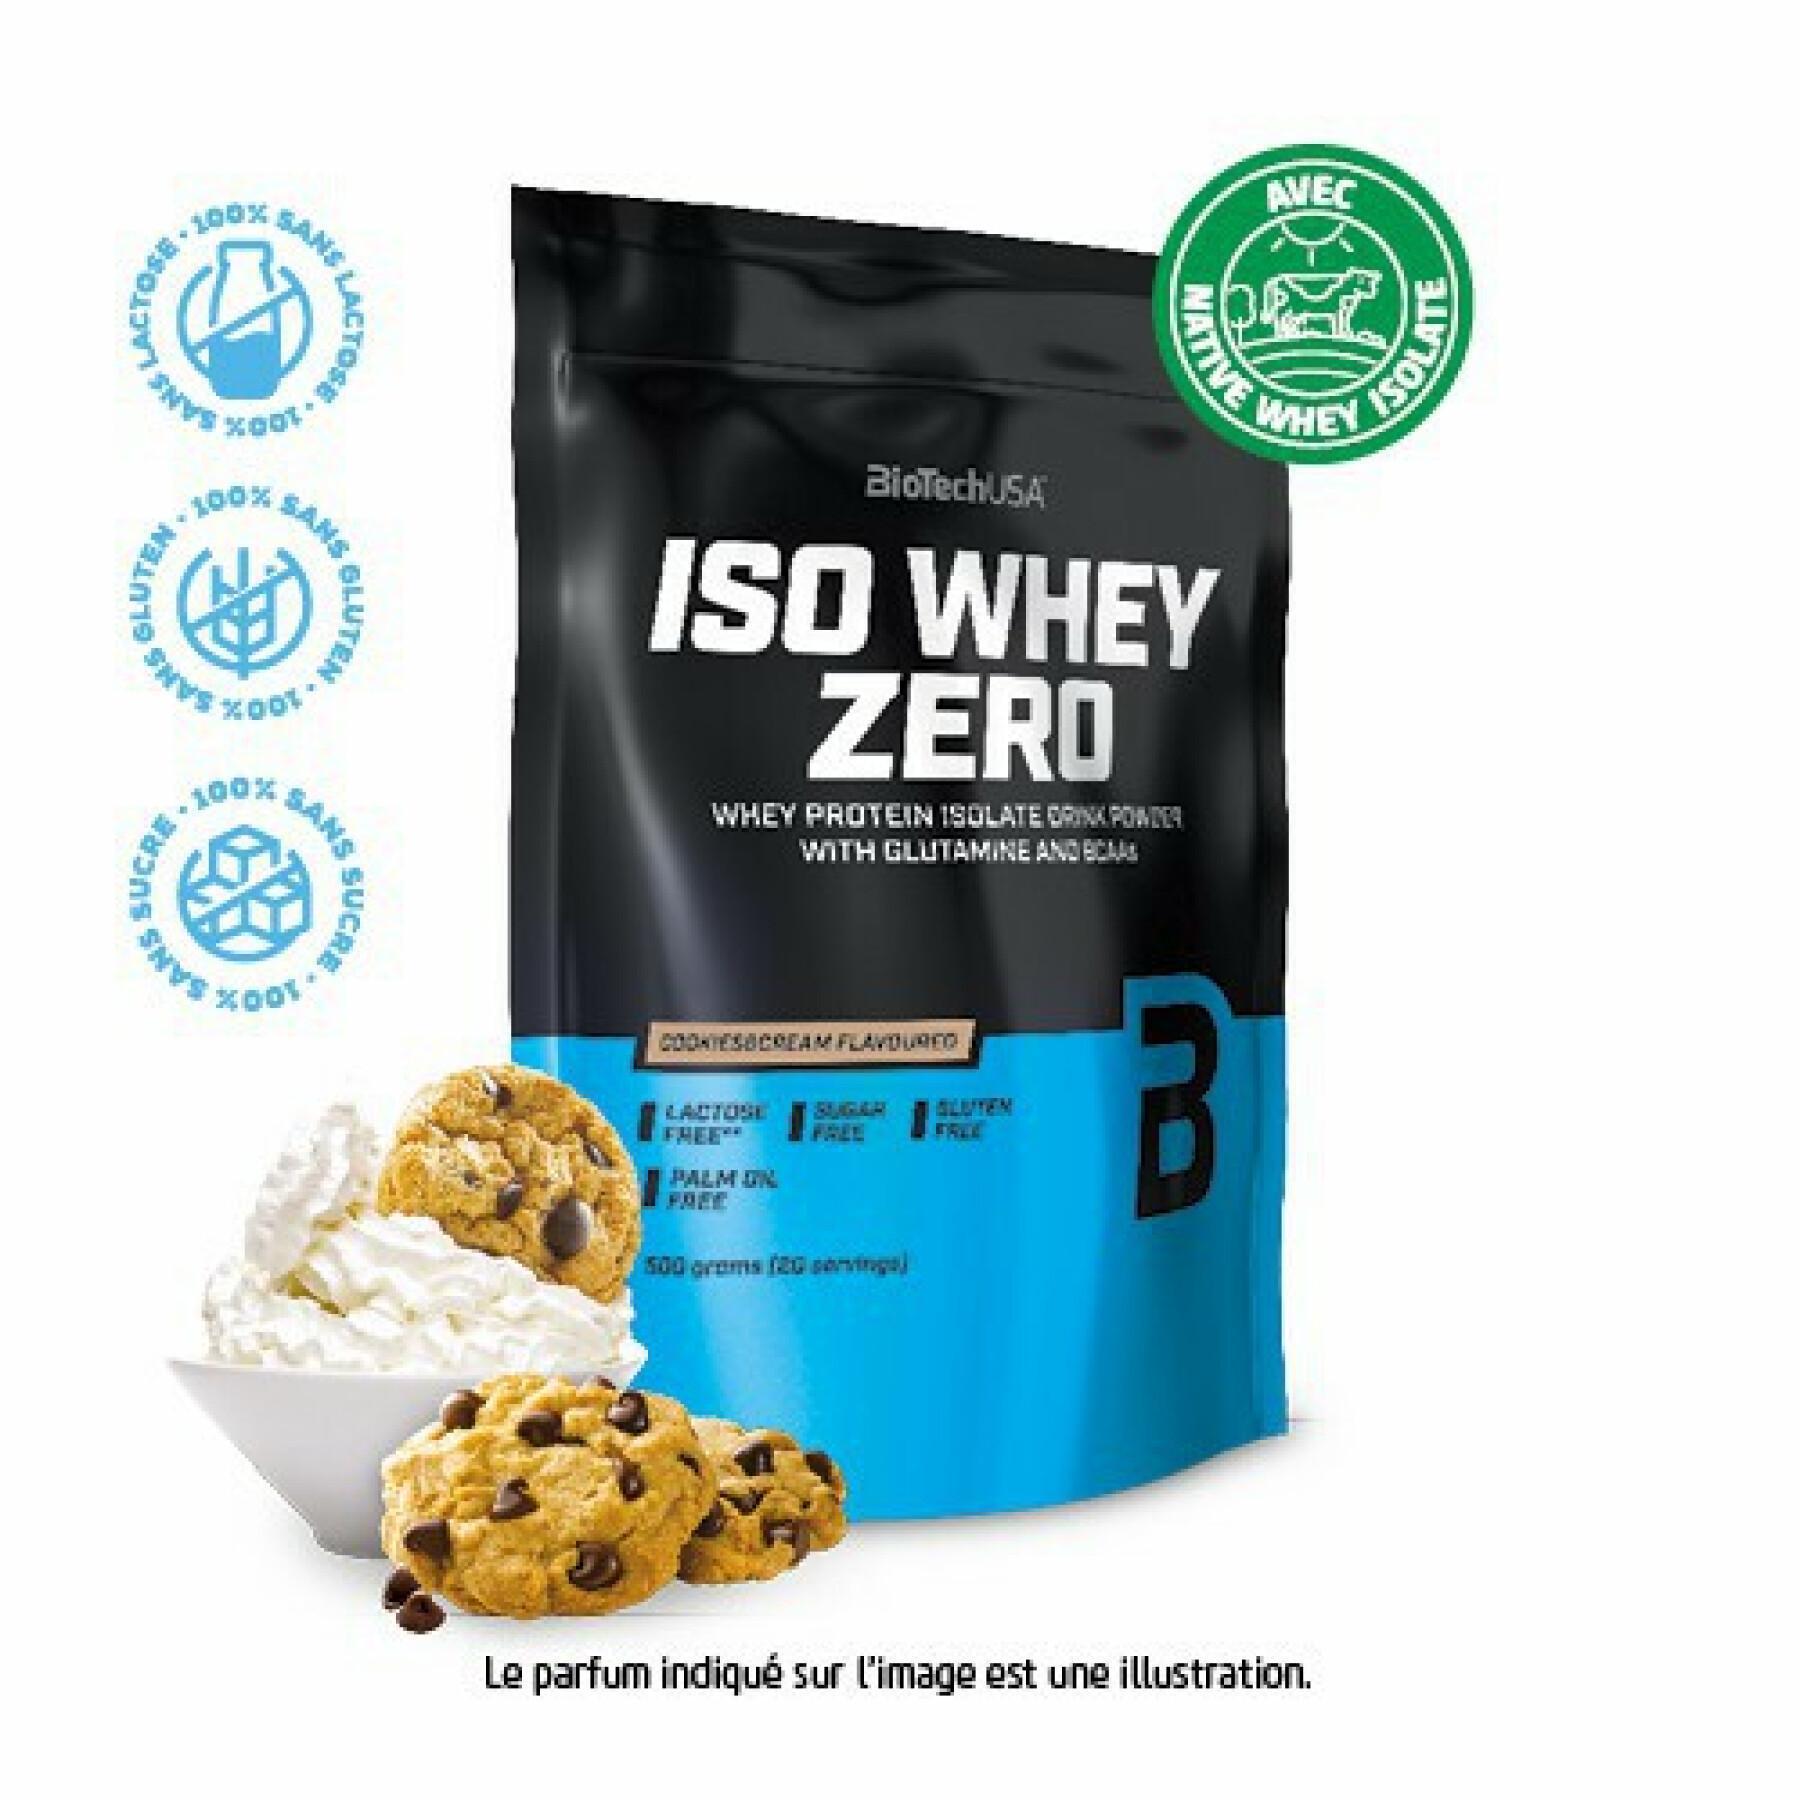 Pacote de 10 sacos de proteína Biotech USA iso whey zero lactose free - Cookies & cream - 500g